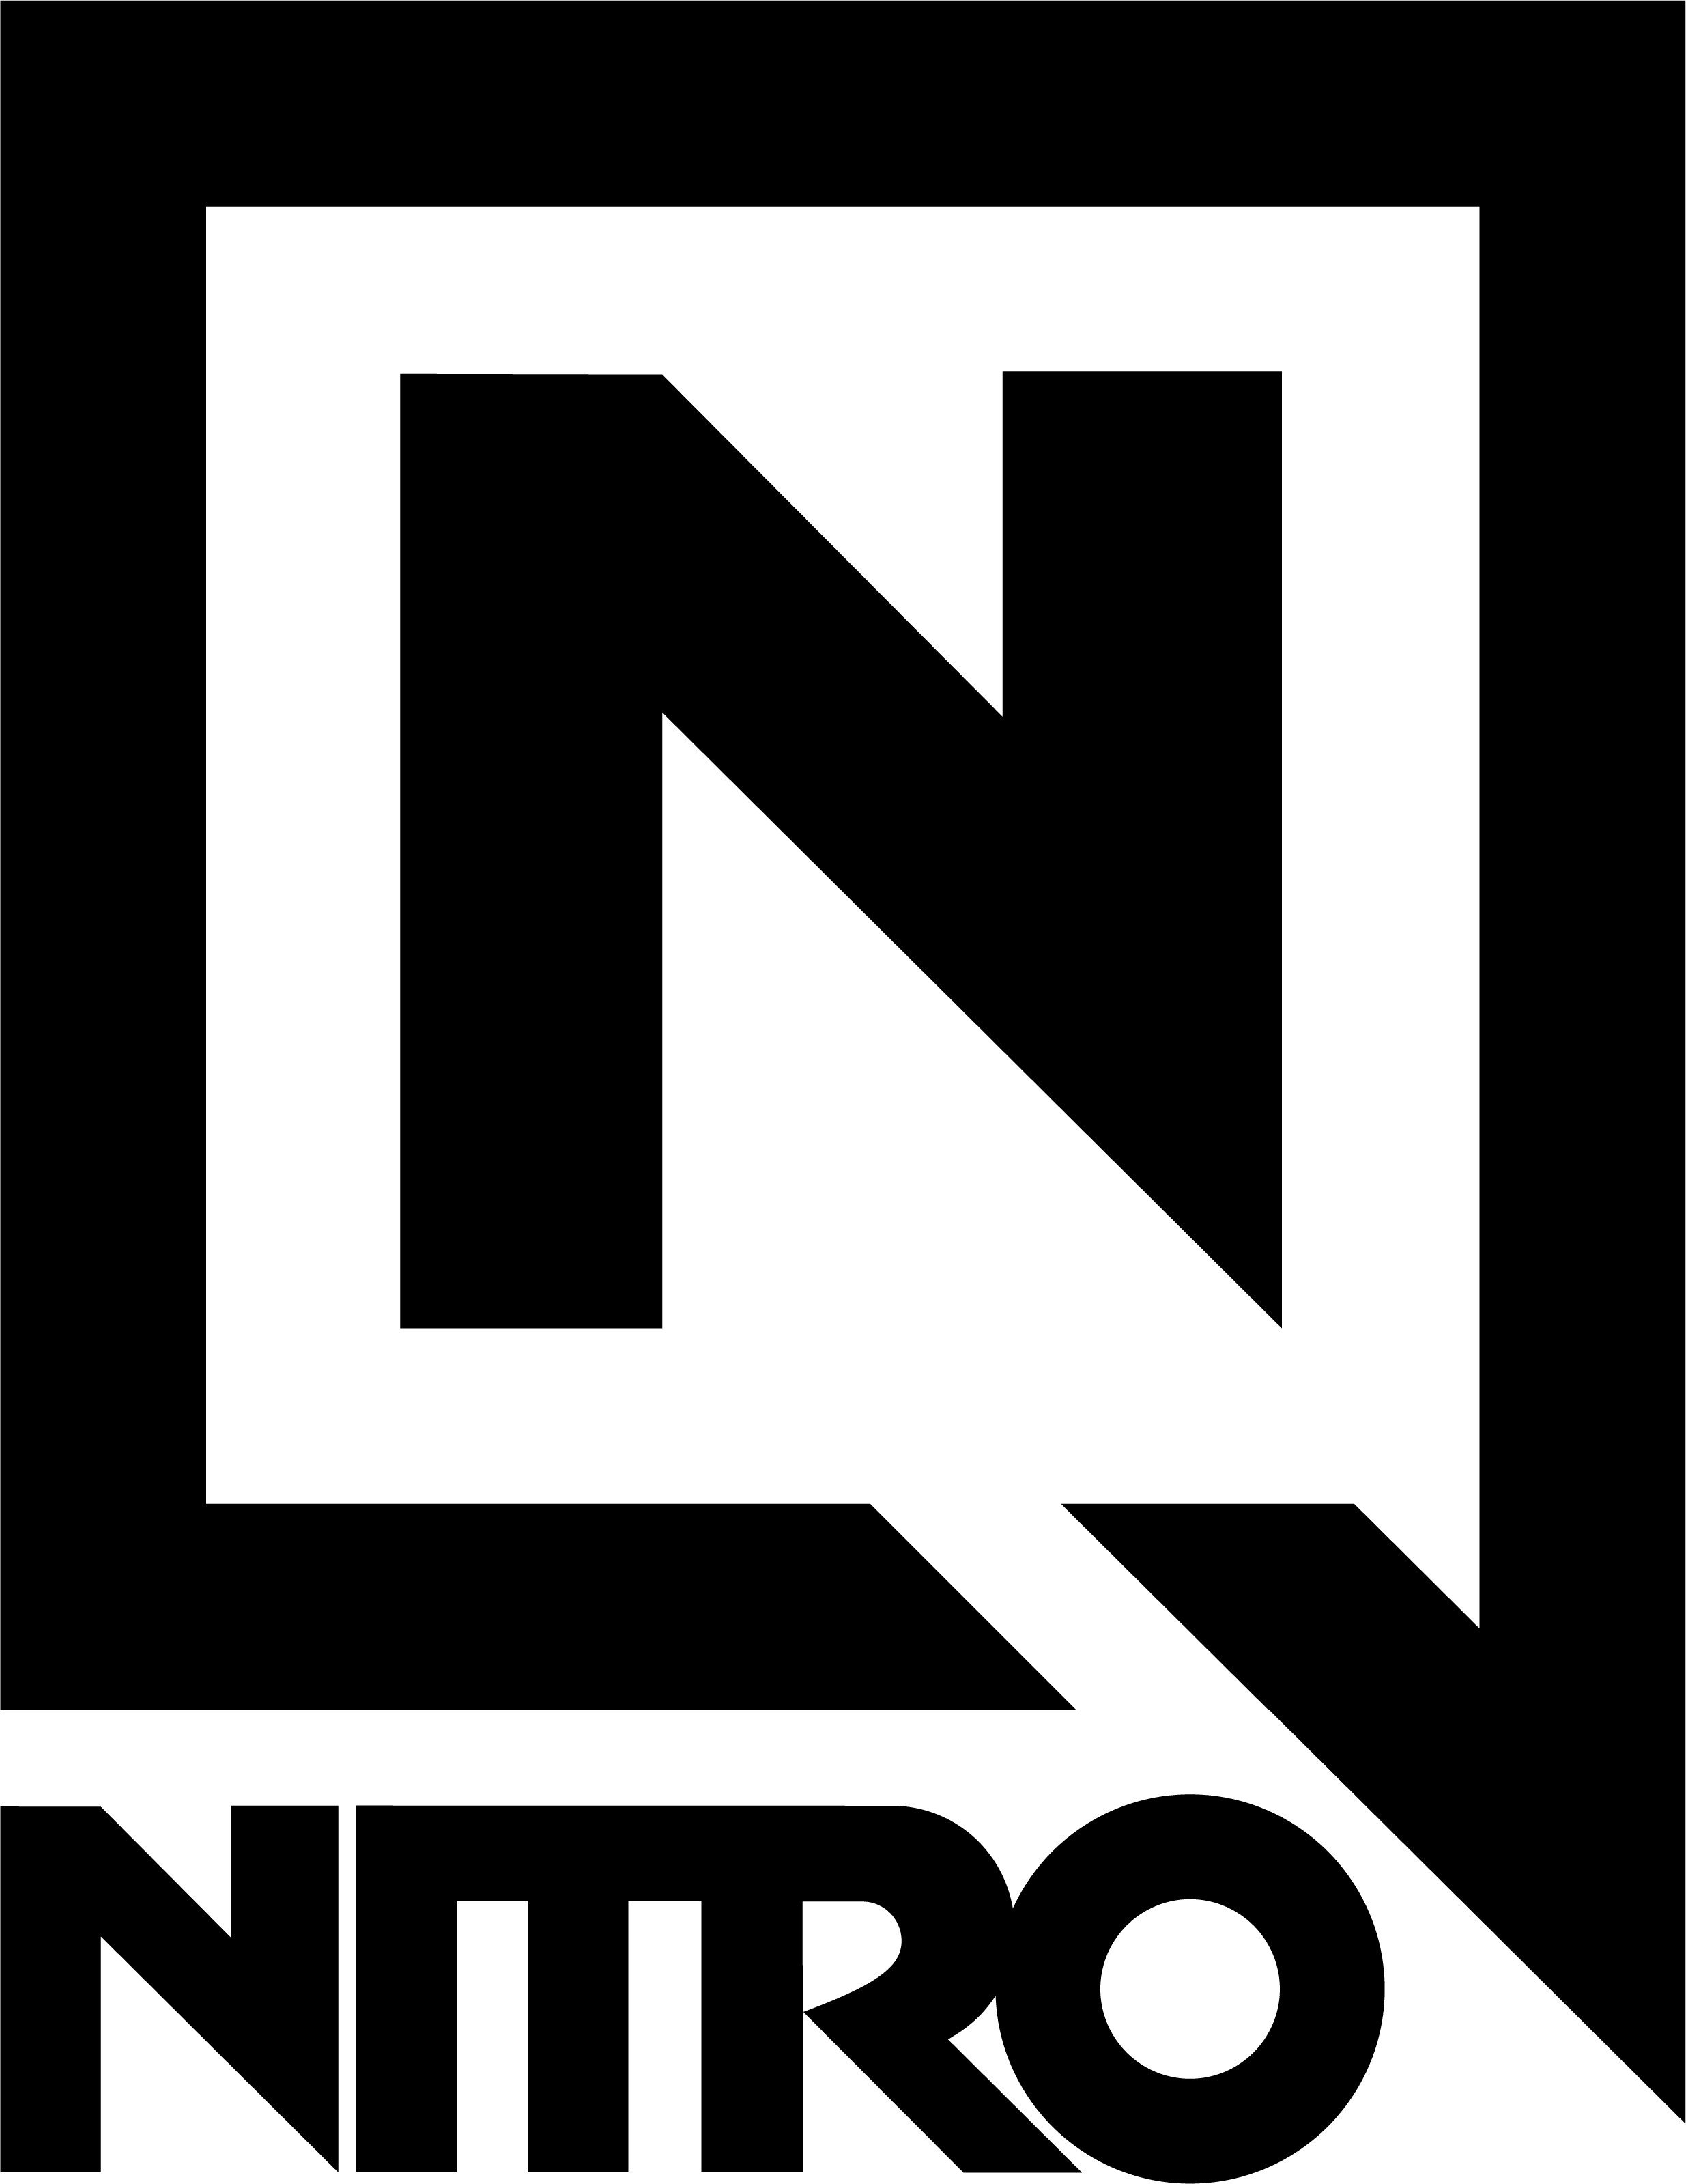 logo-nitro